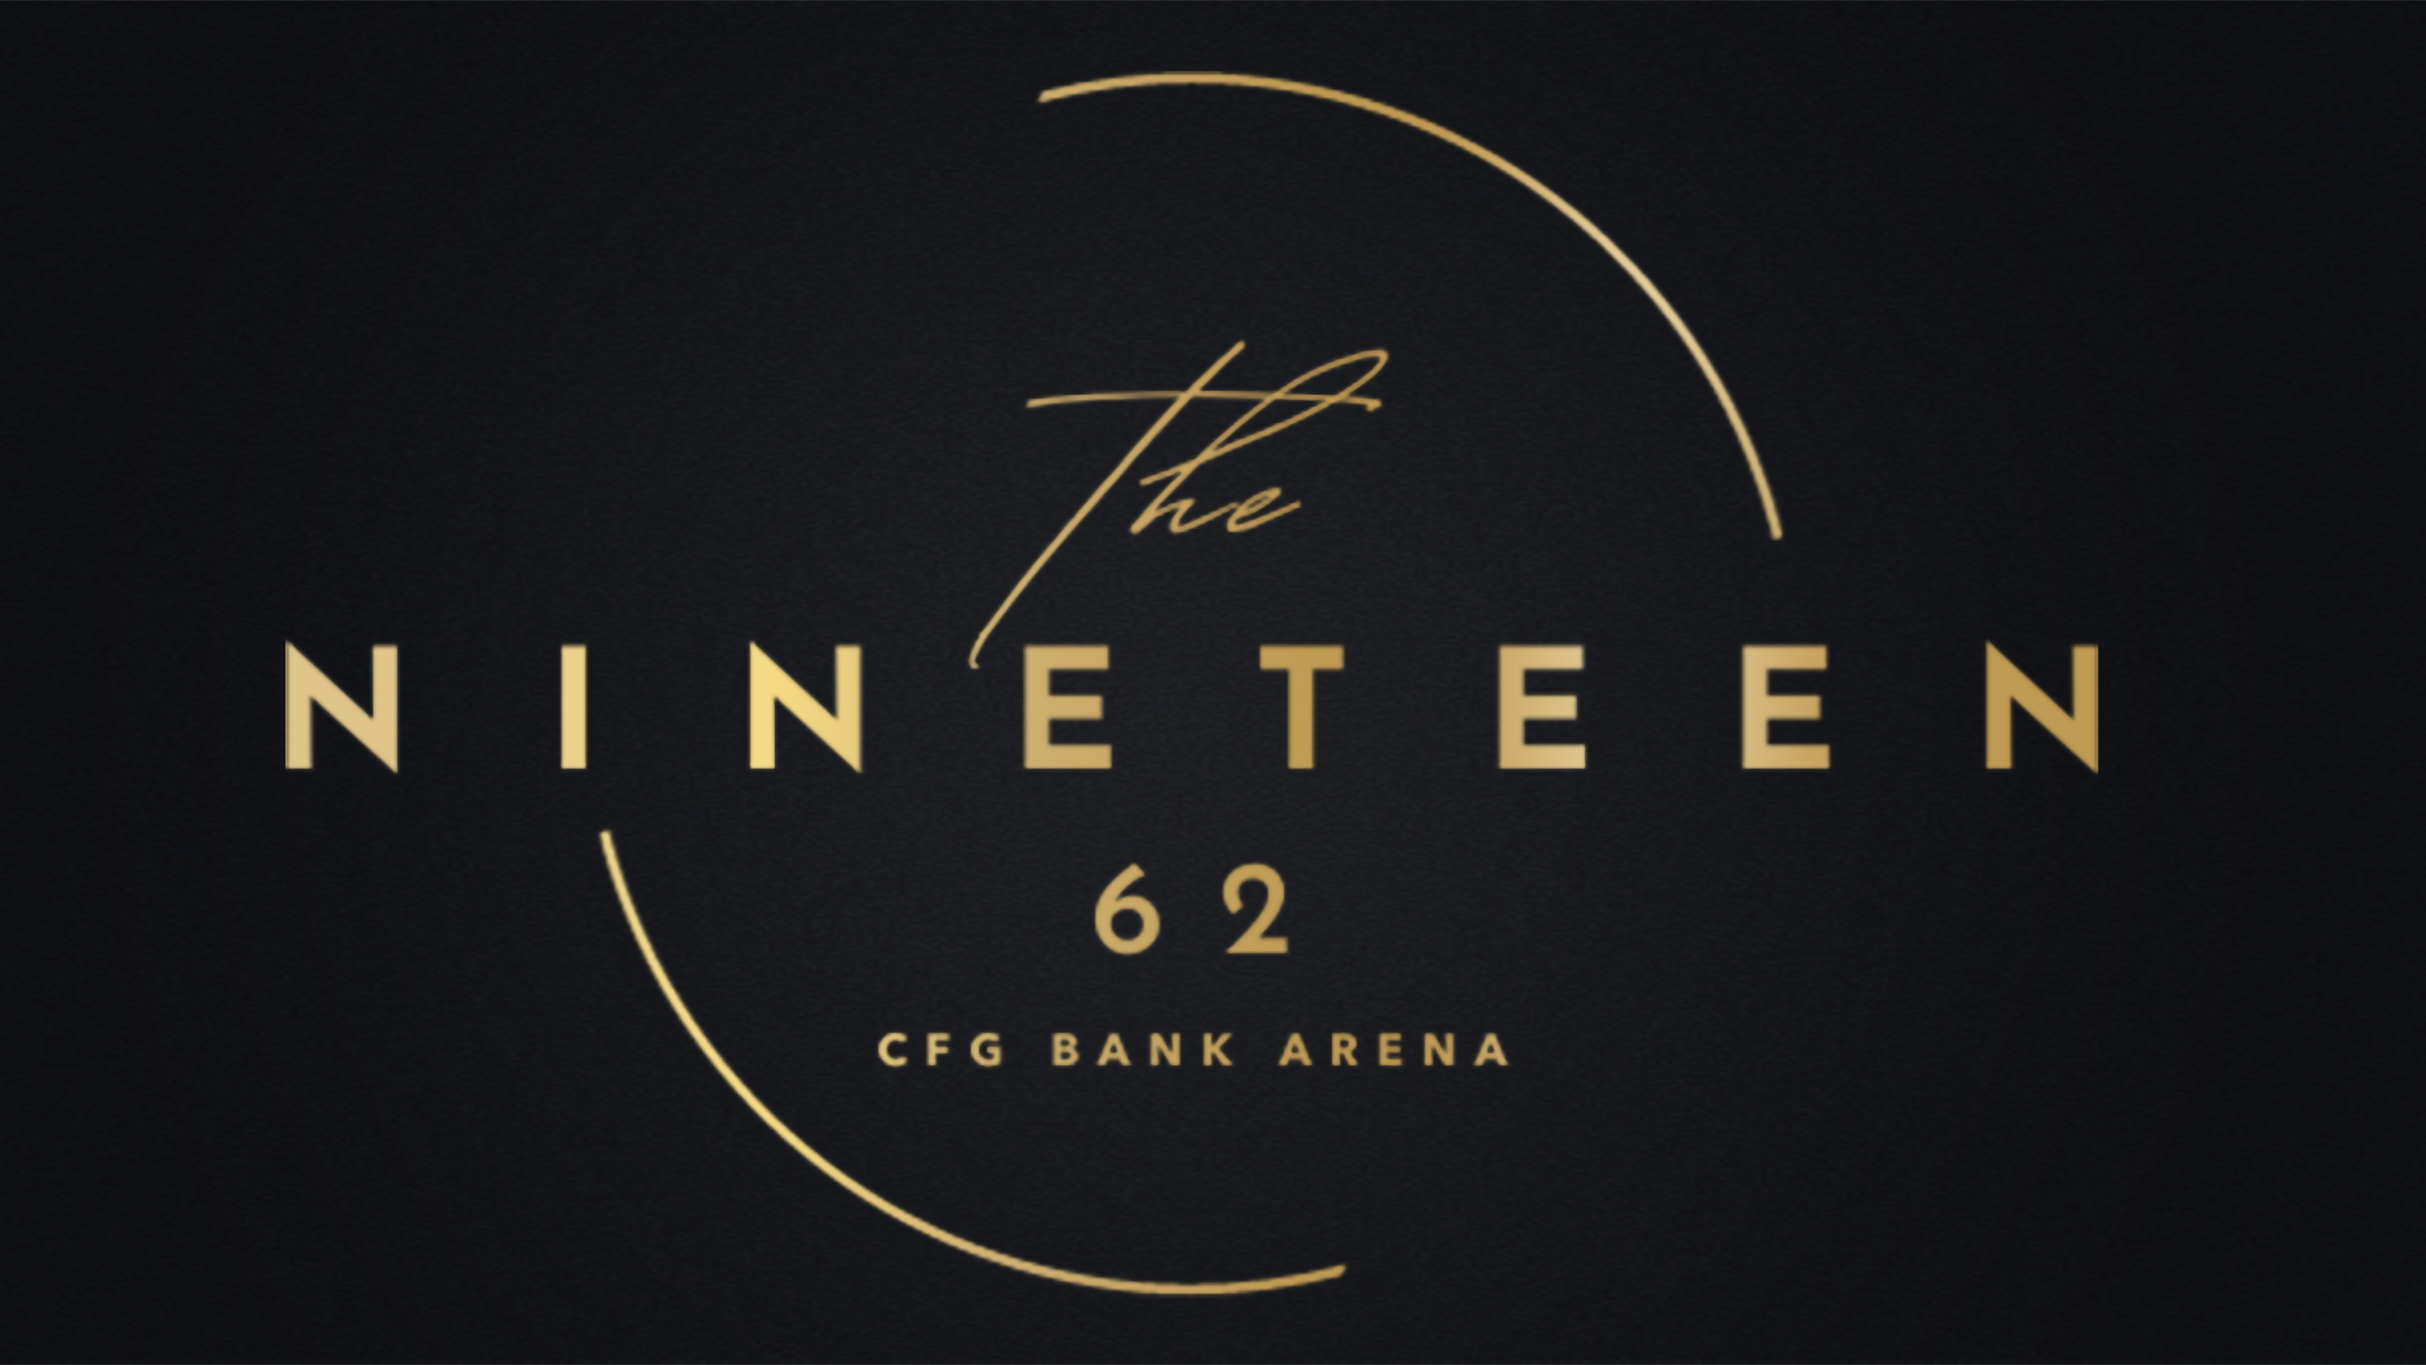 The NINETEEN 62 at CFG Bank Arena